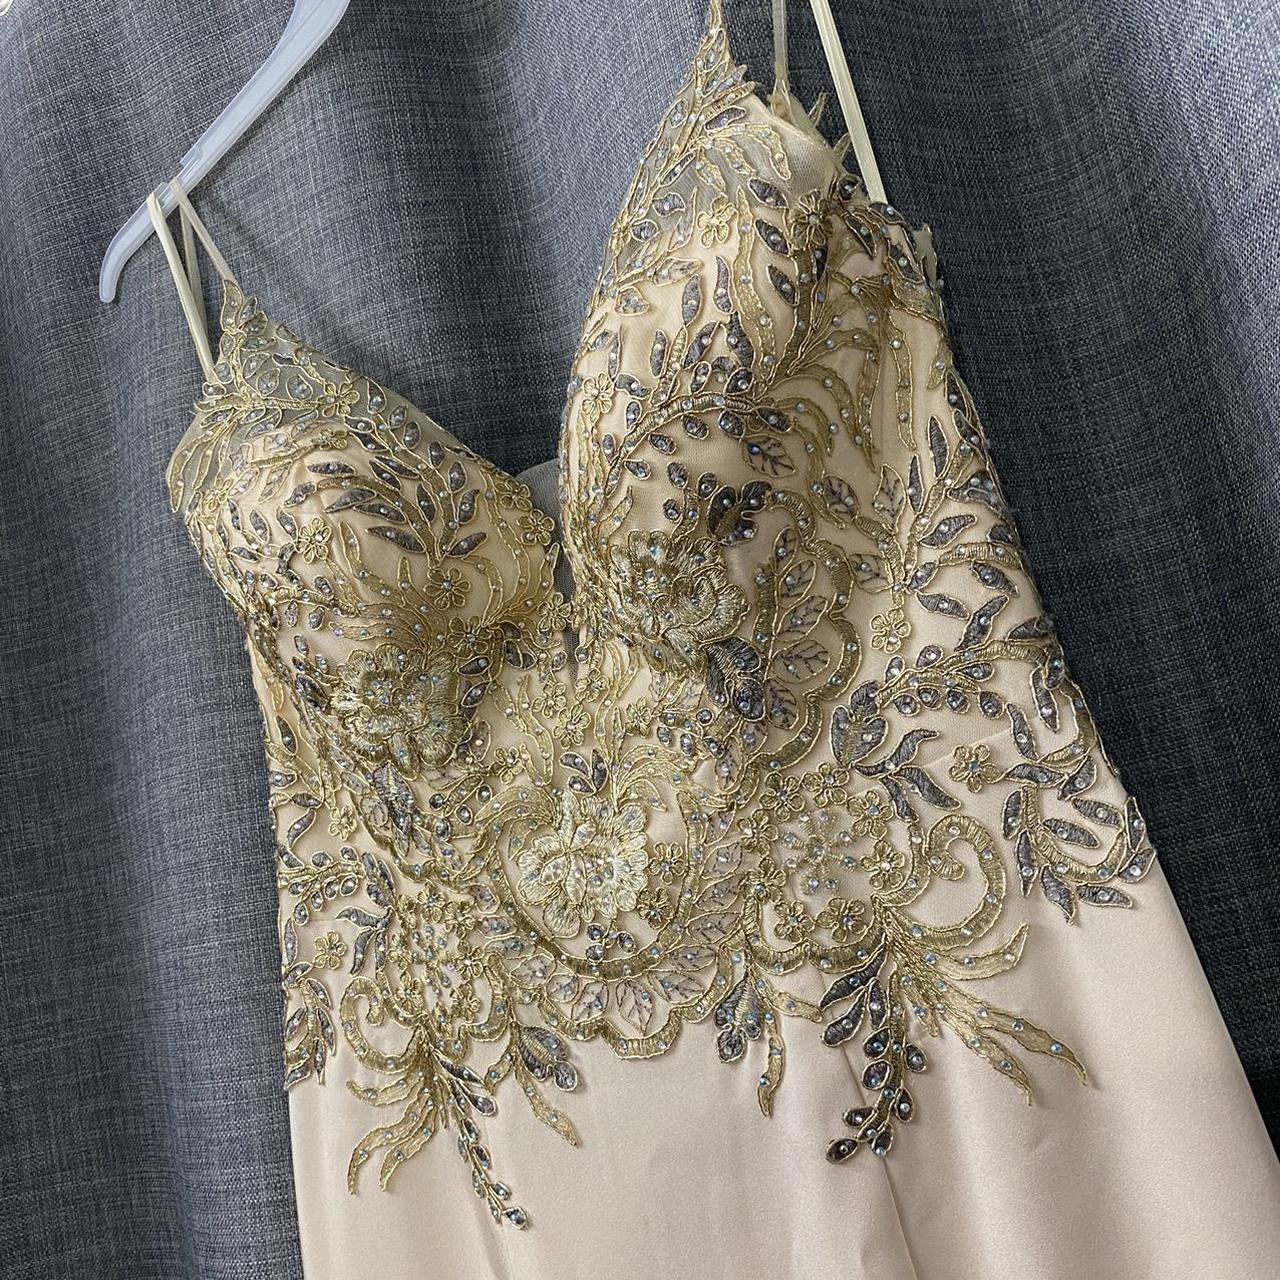 Product Image 3 - Estelle's dresses/davids bridal Cindy's Collection